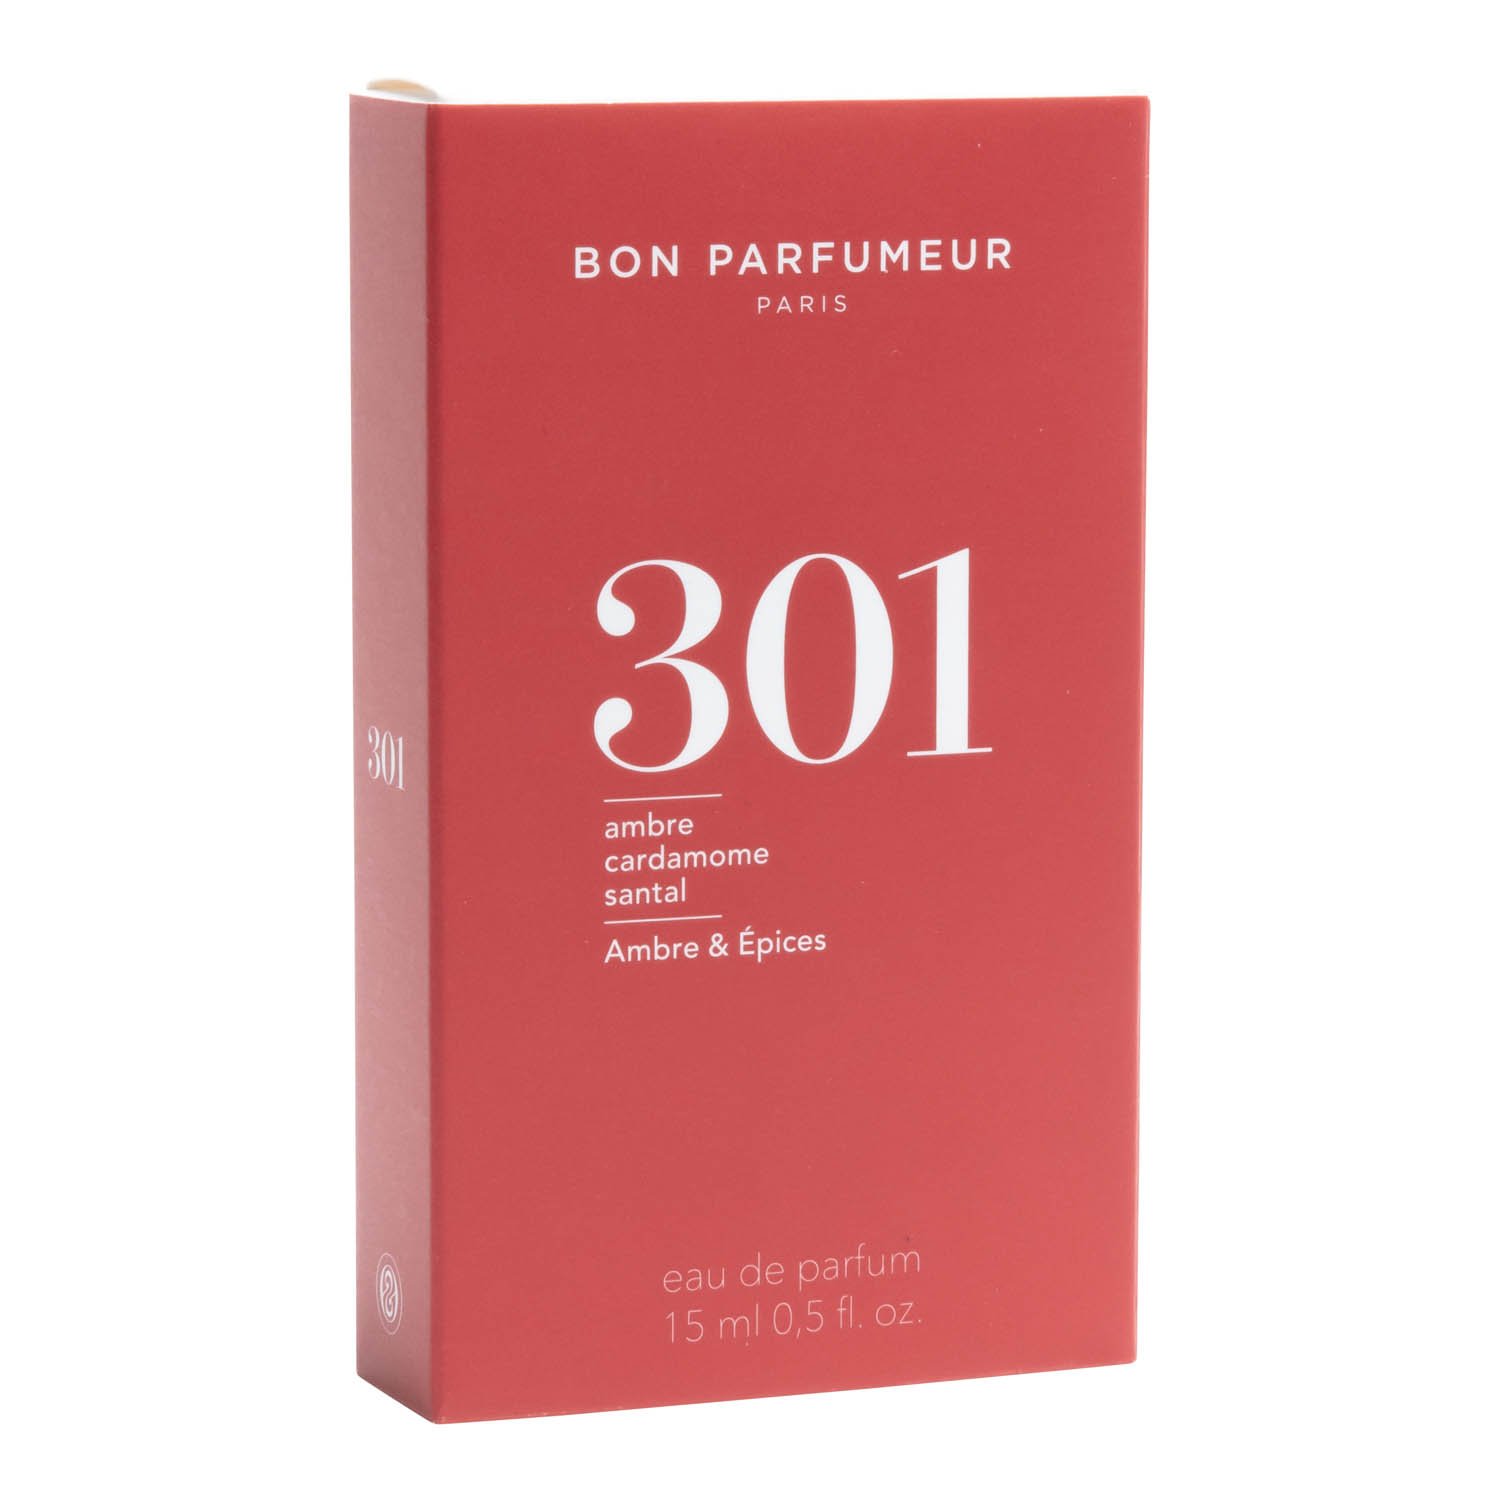 Bon Parfumeur Eau de Parfum 301 15 ml